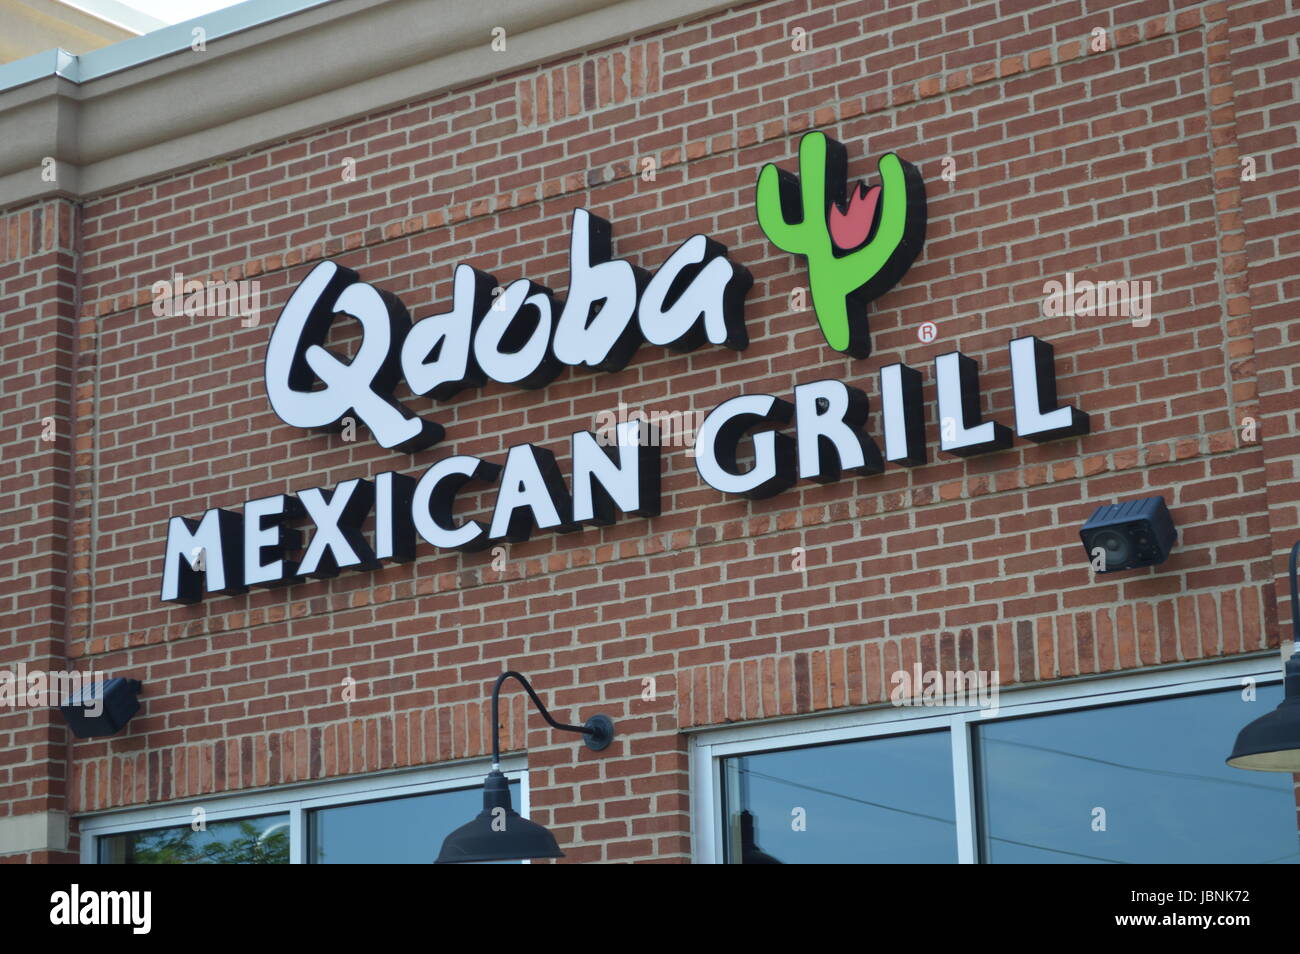 Qdoba Mexican Grill Banque D'Images